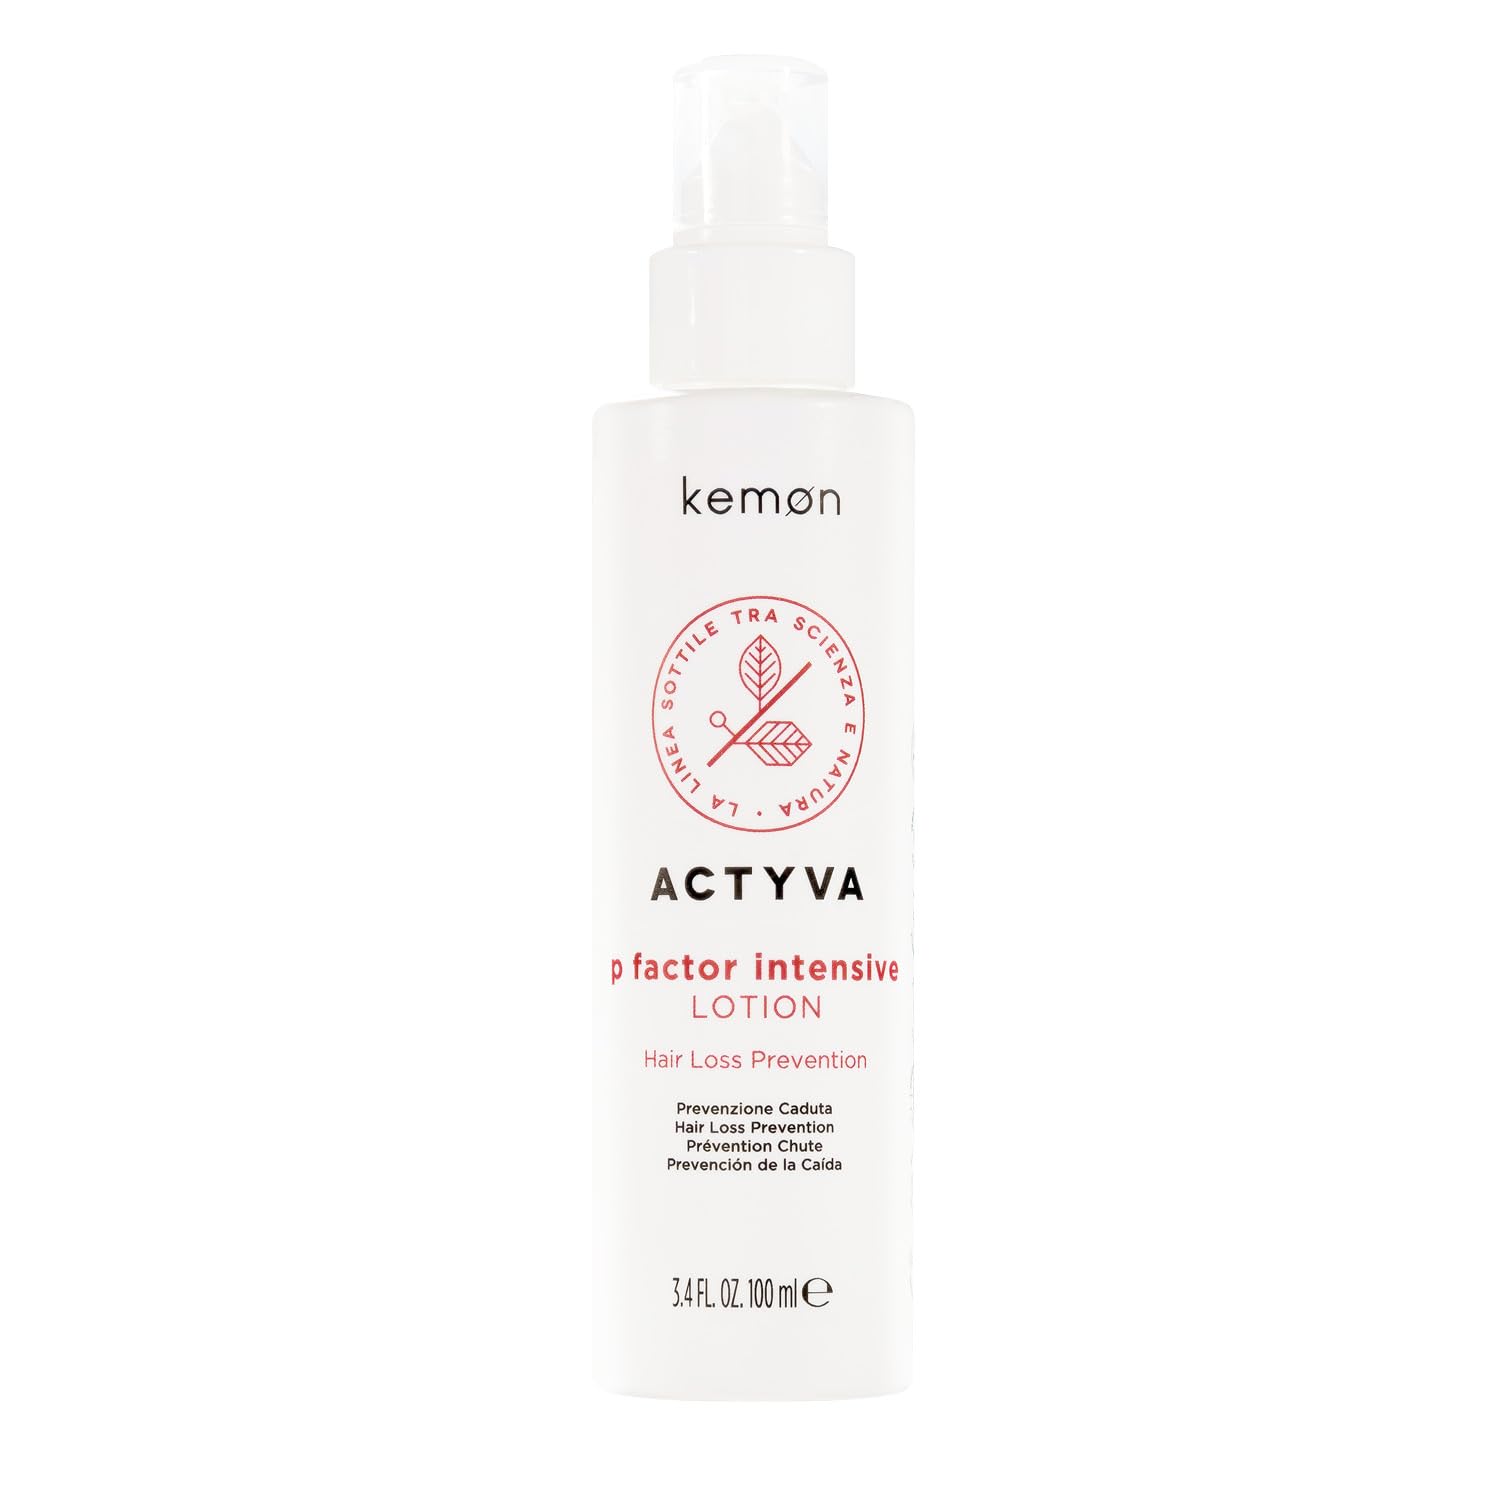 Kemon - Actyva P Factor Lotion Intensive, Lotion zur Prävention von Haarausfall angereichert mit pflanzlichen Stammzellen - 100 ml